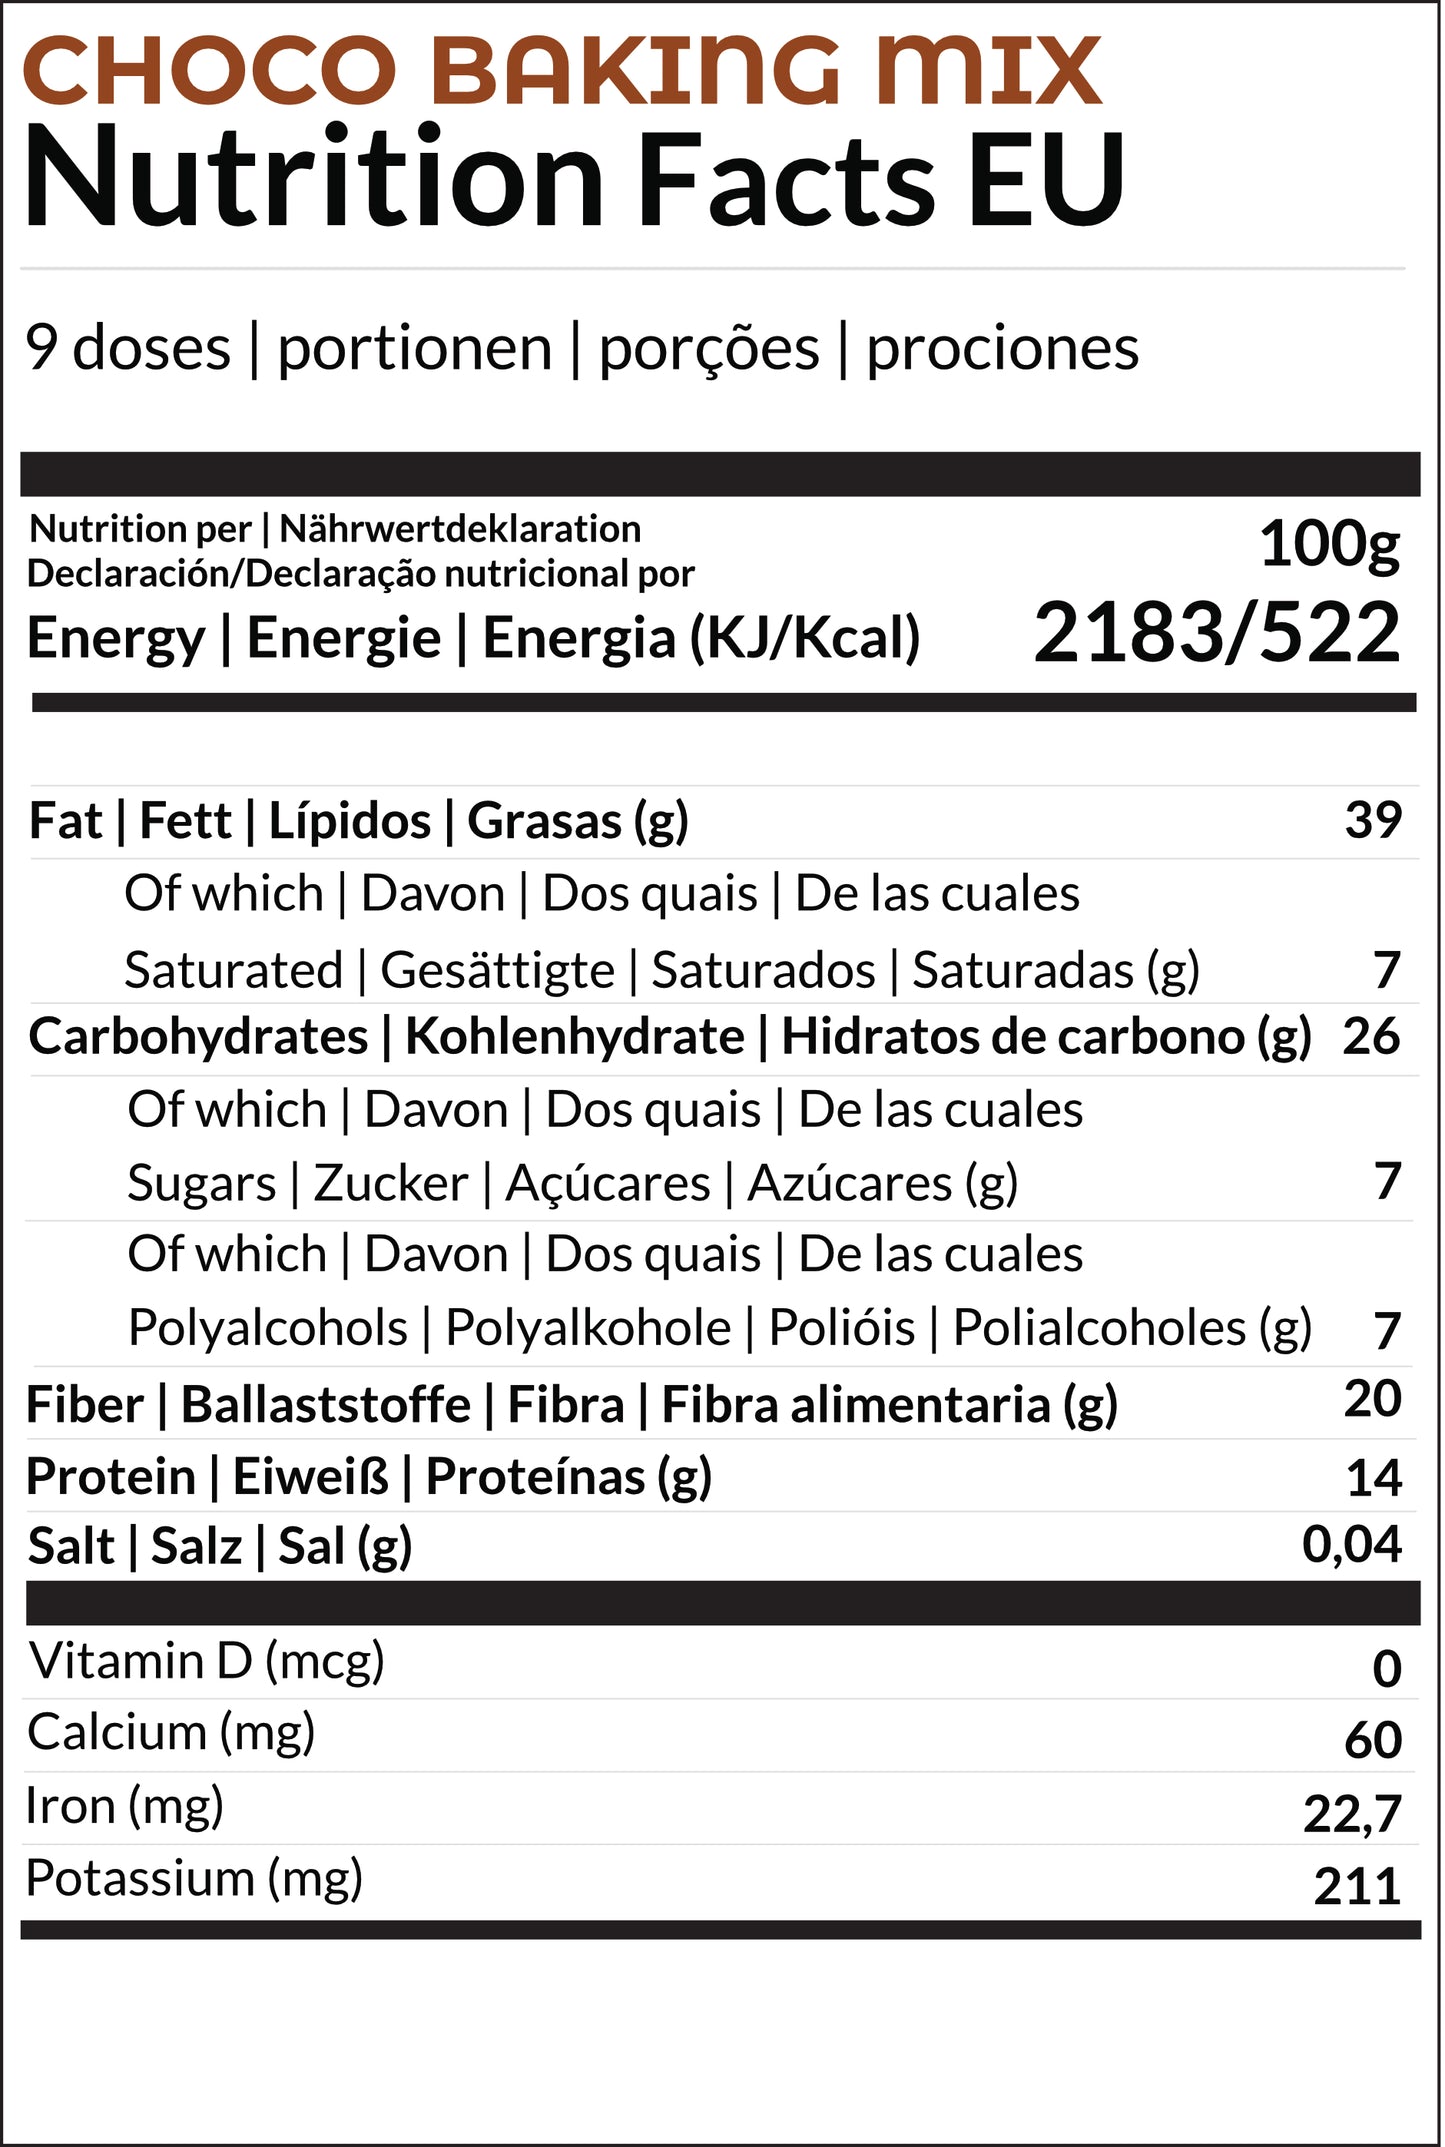 EU nutritional information Choco baking mix